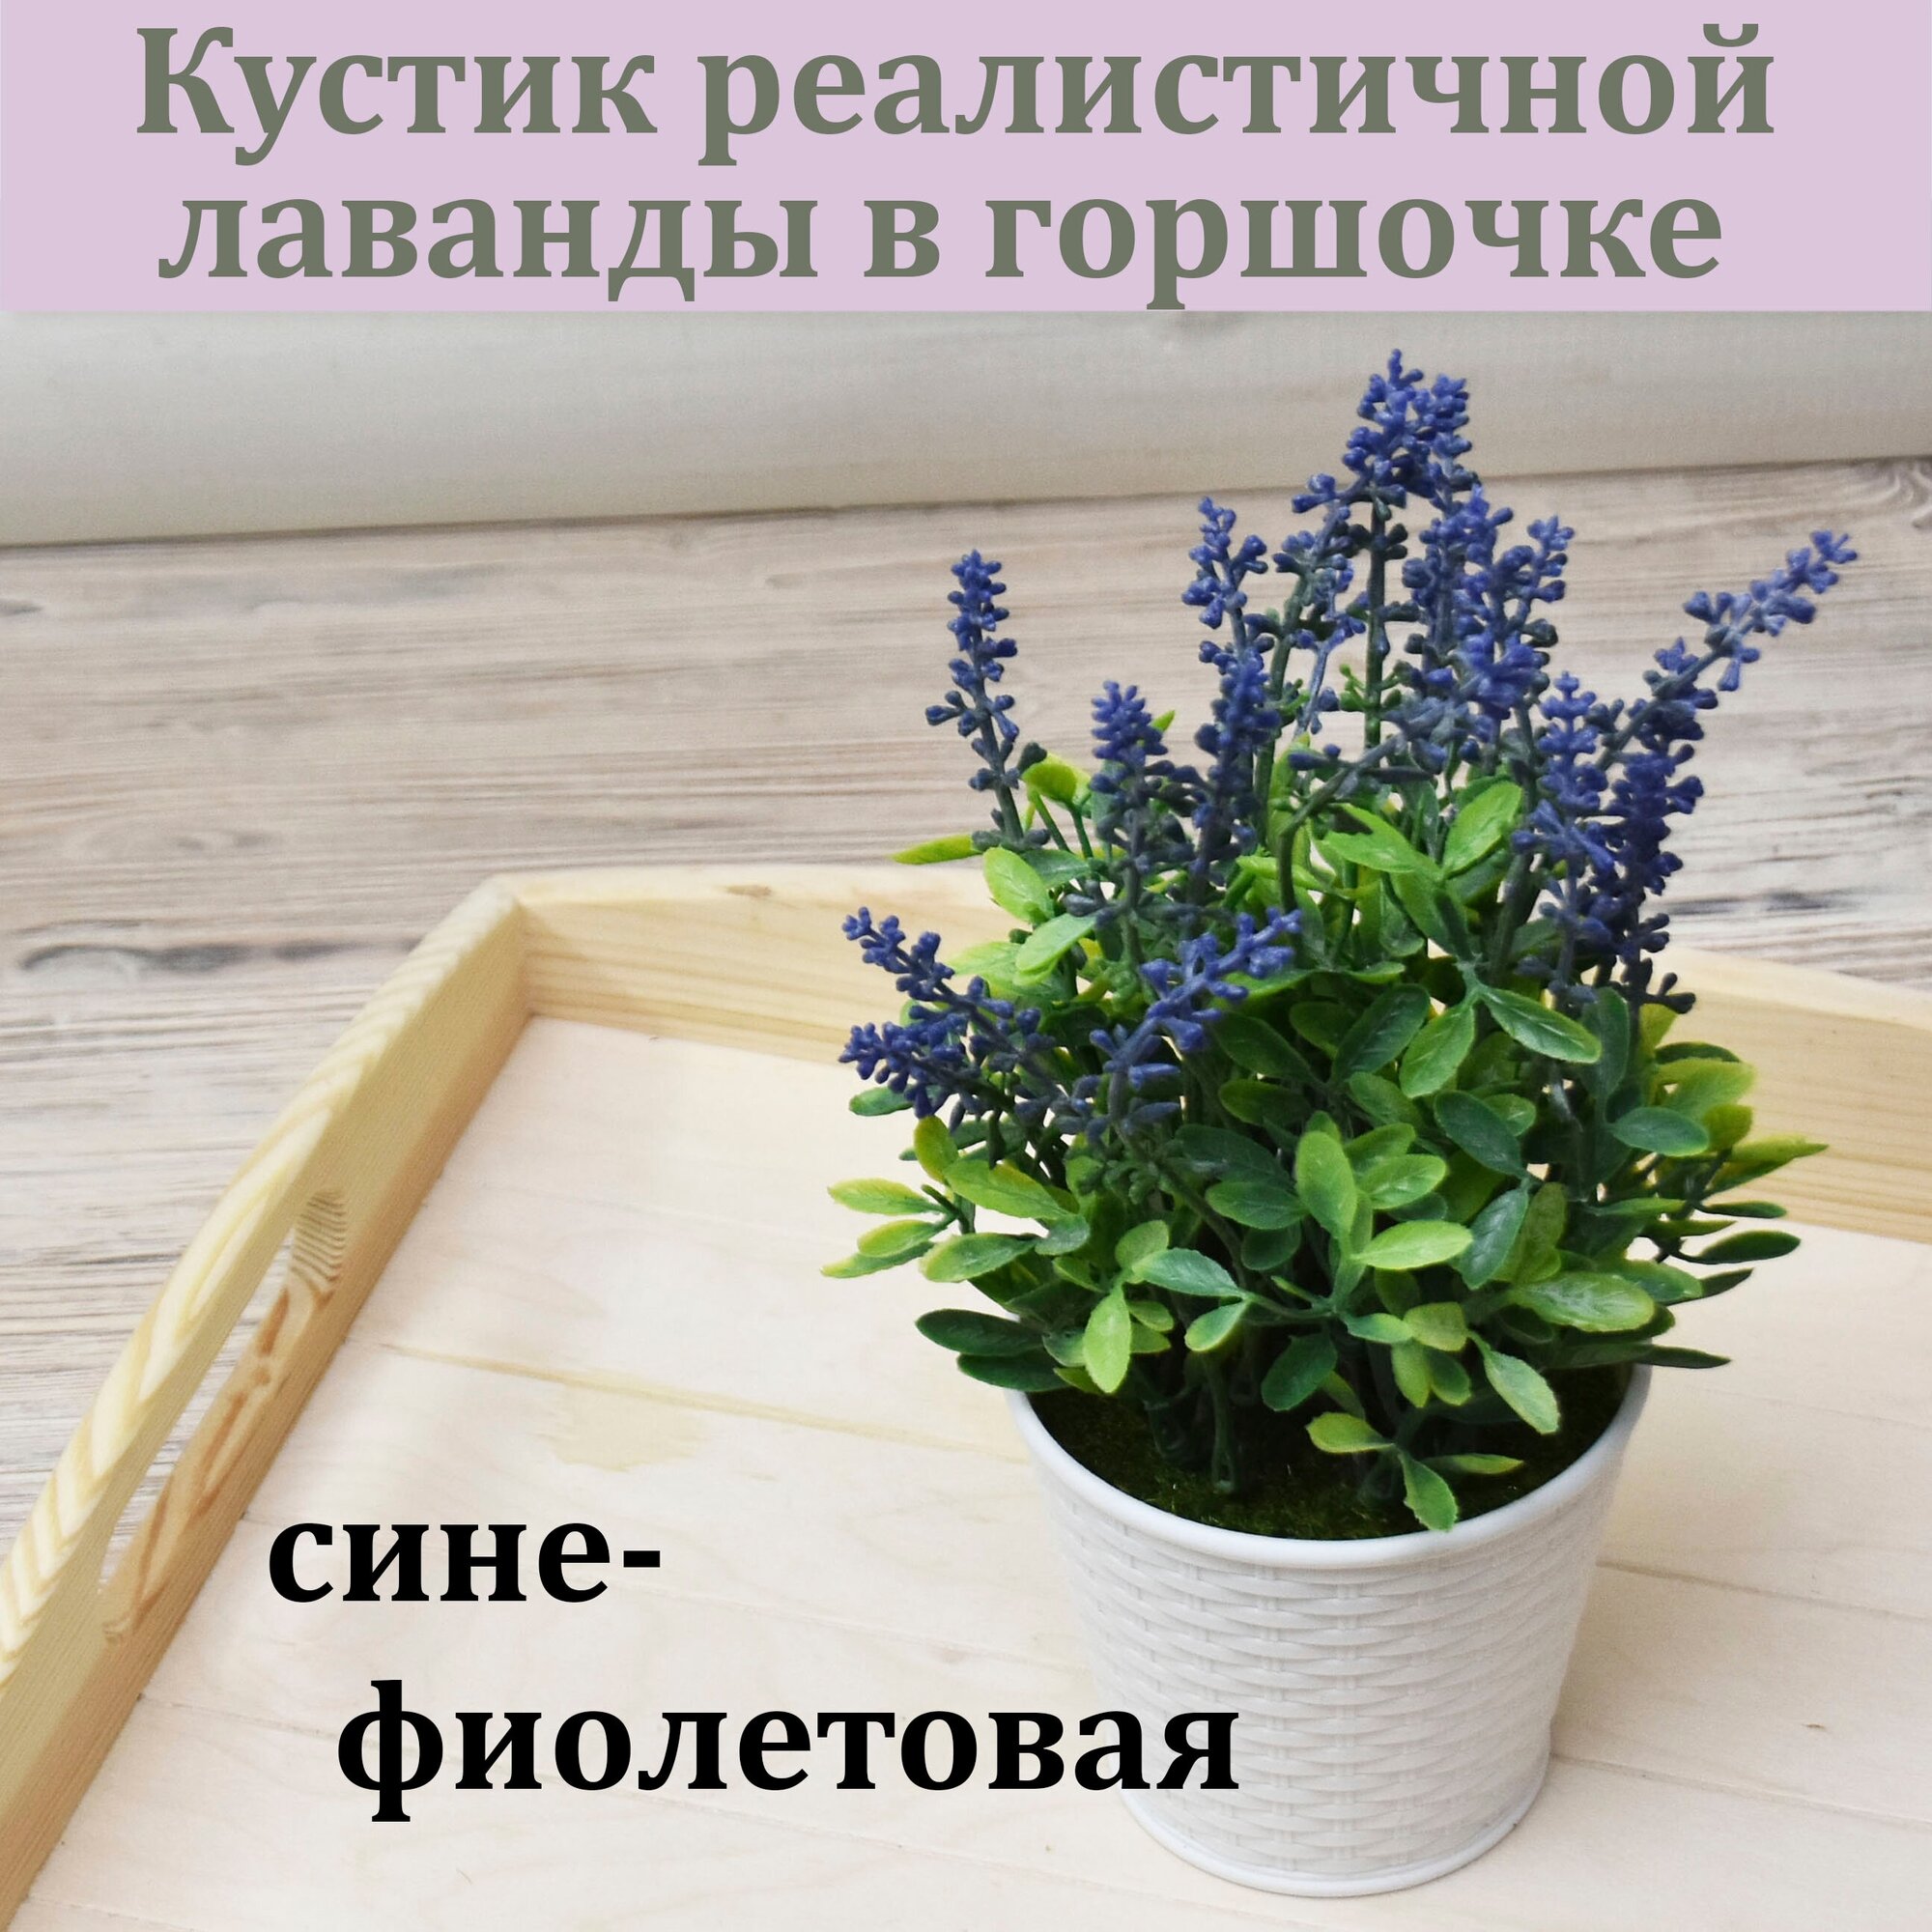 Сине-фиолетовый кустик реалистичной лаванды / Цветок в горшочке / Искусственный цветок для декора